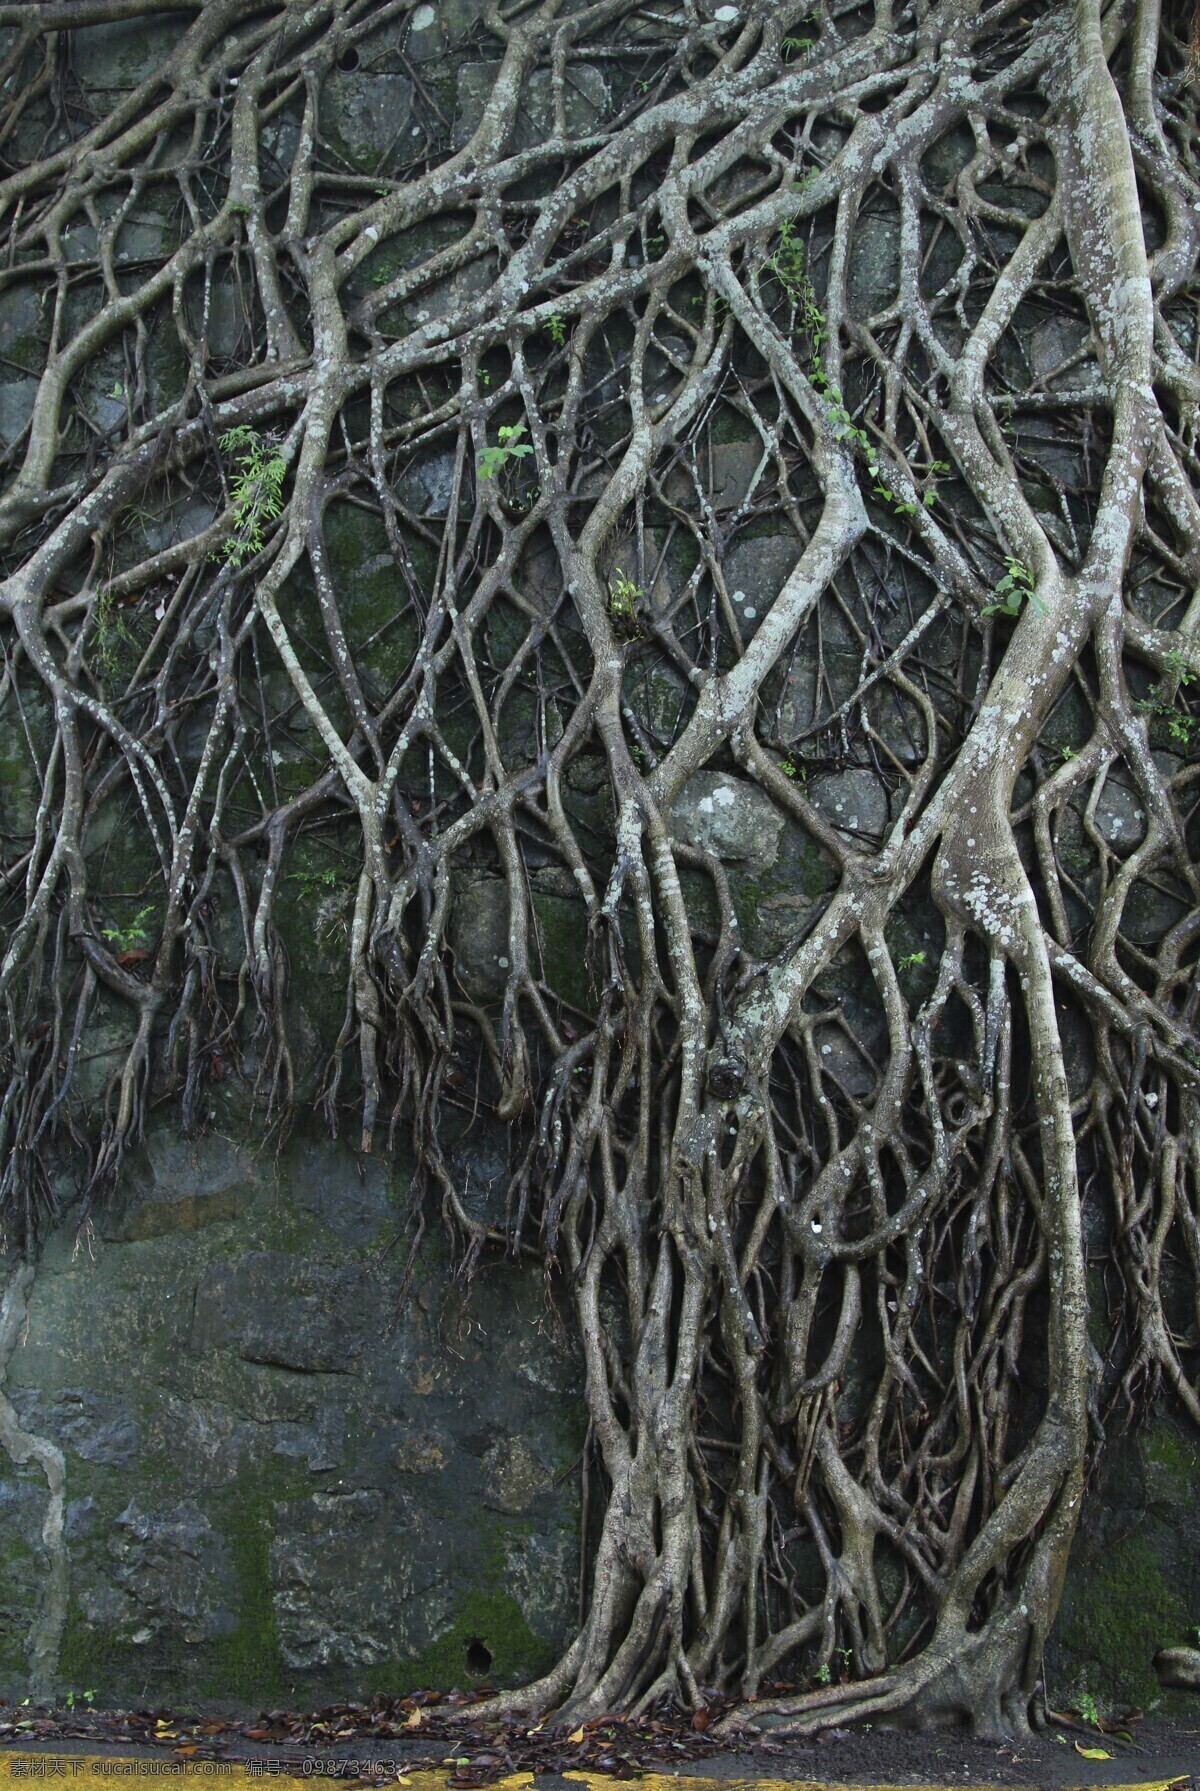 樹根背景 树根 树枝 背景 自然 树 微观 微距 墙 土 伸展 攀爬 延伸 网 关系 树藤 自然风景 自然景观